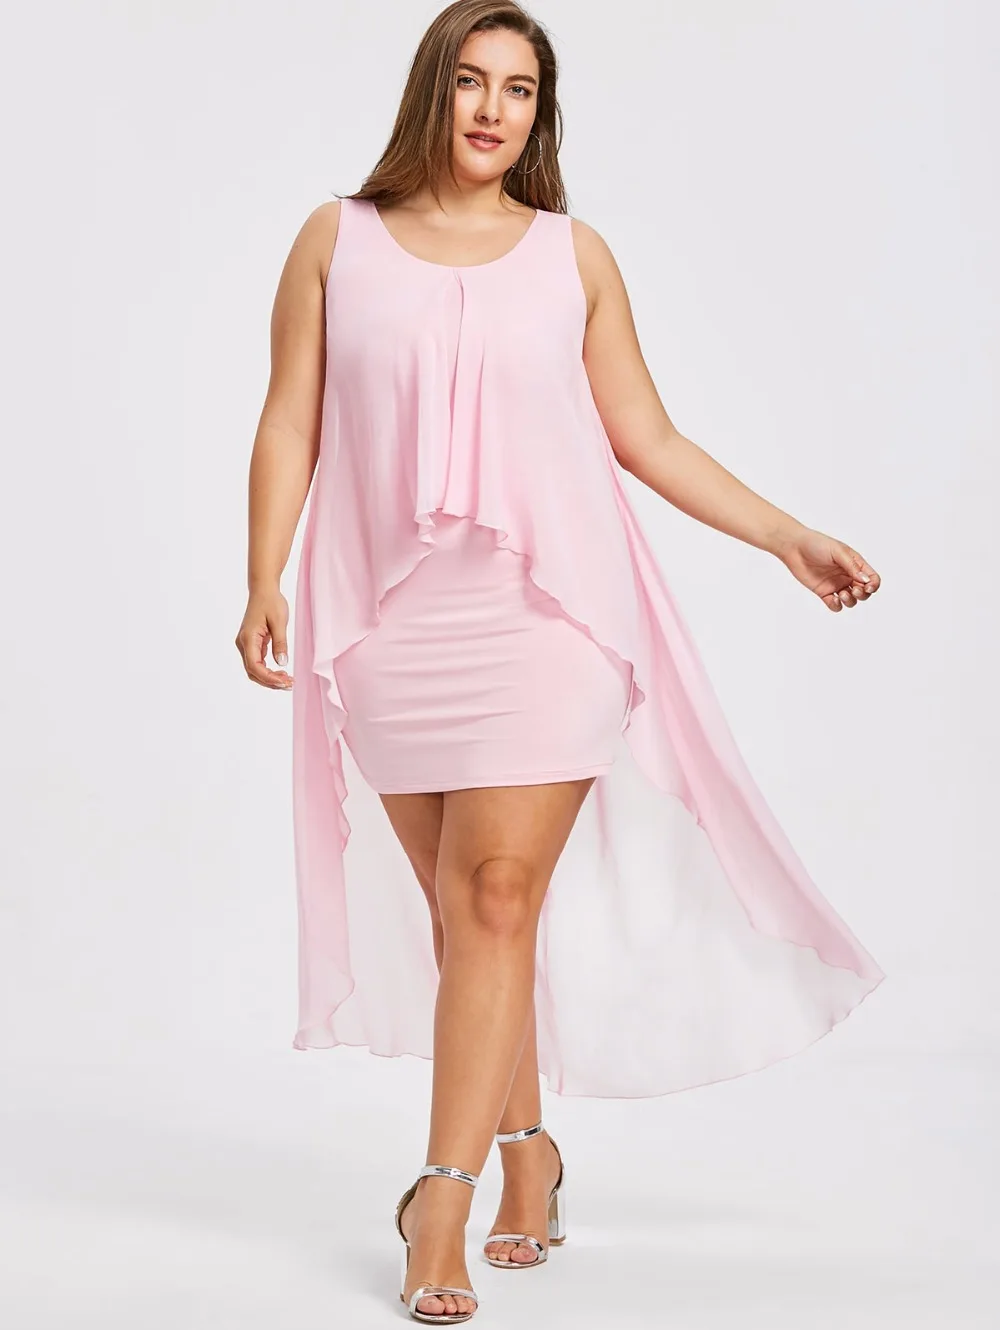 5XL Plus Size Sleeveless High Low Hem Flyaway Dress Summer Sweet Pink ...